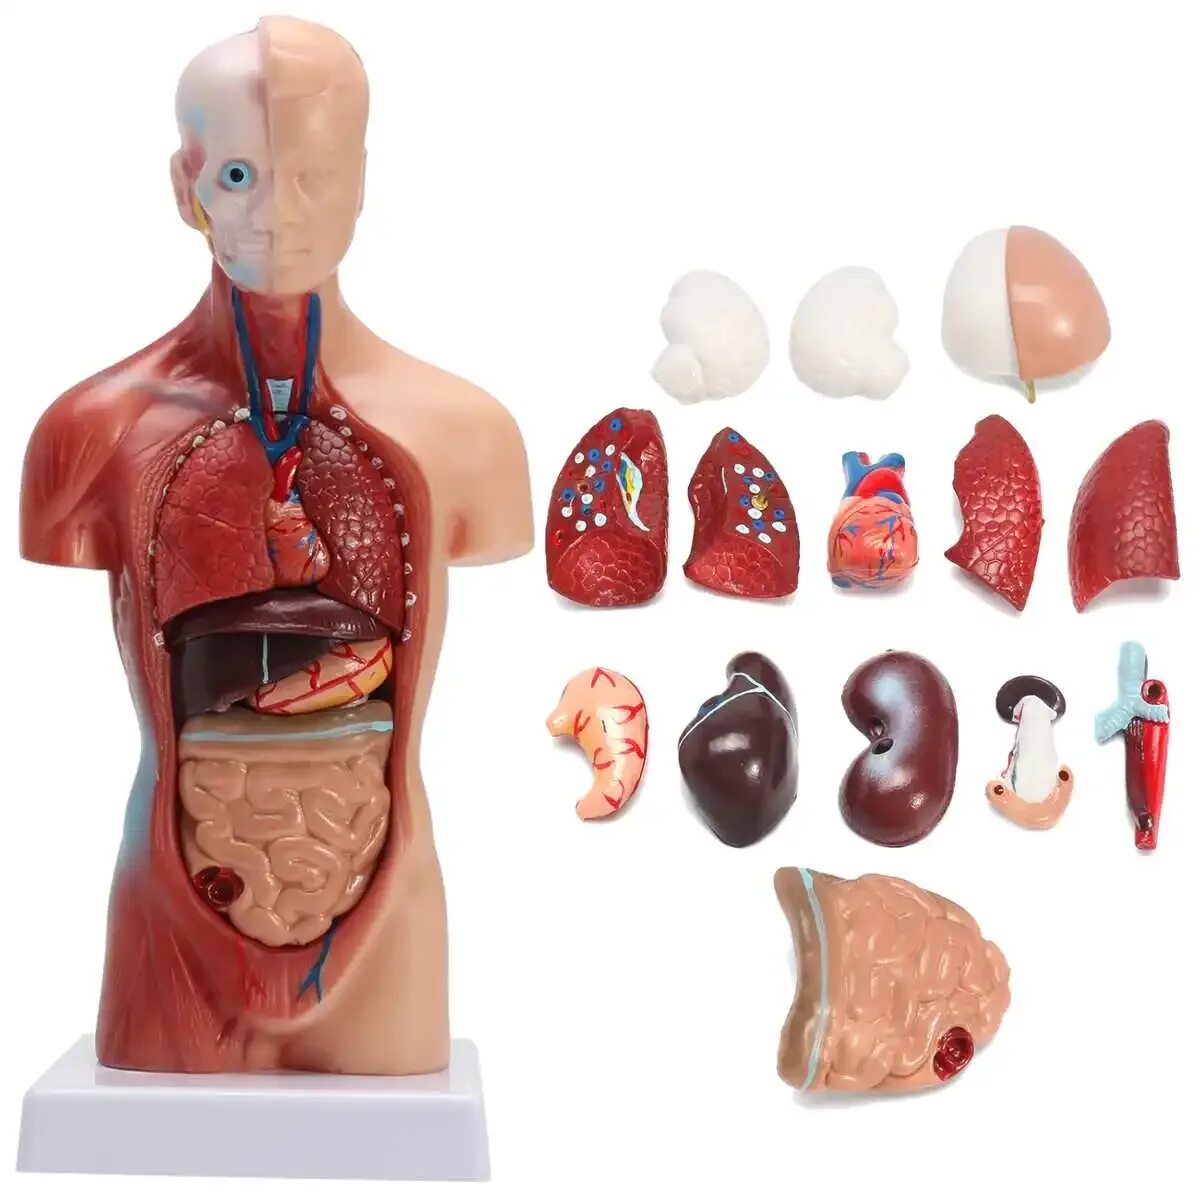 Organ купить. Анатомическая модель торса человека. Анатомическая модель 3dсапина. Муляж внутренних органов человека. Макет человеческого тела.